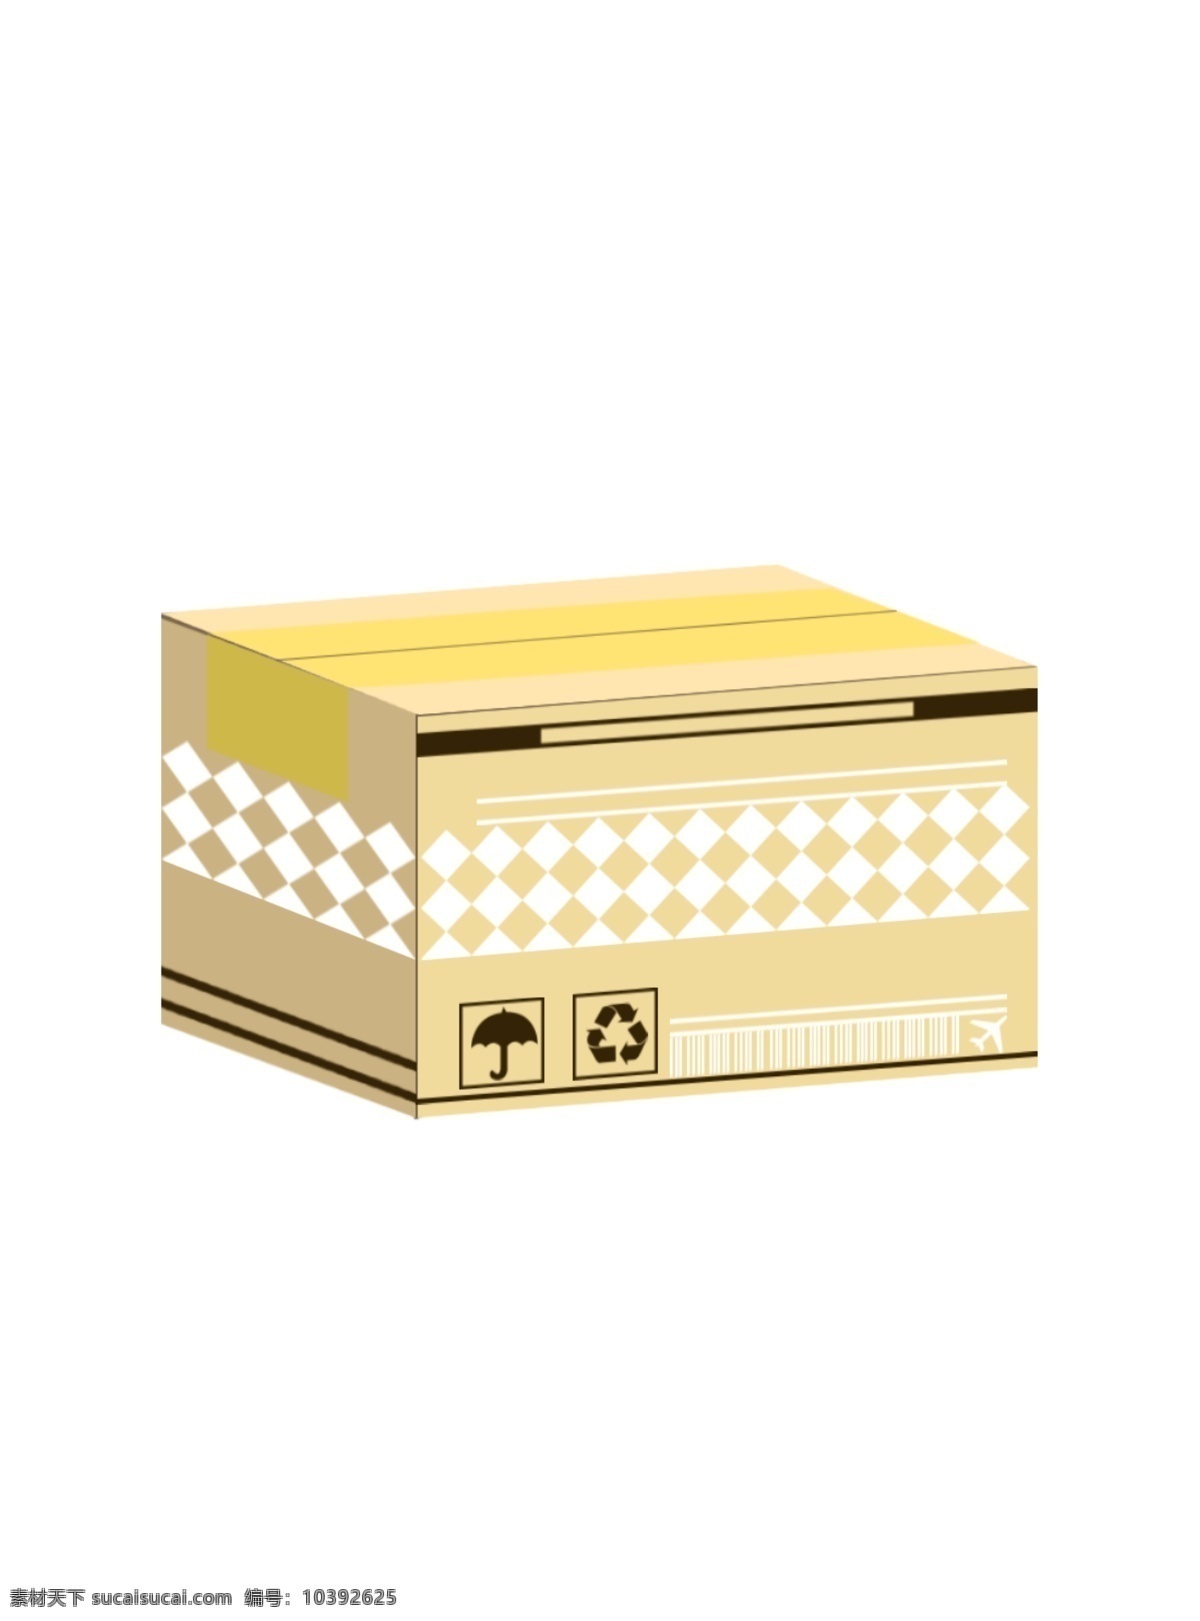 快递 包装 盒子 纸箱 快递箱 纸盒箱子 包装密封箱子 装饰图案